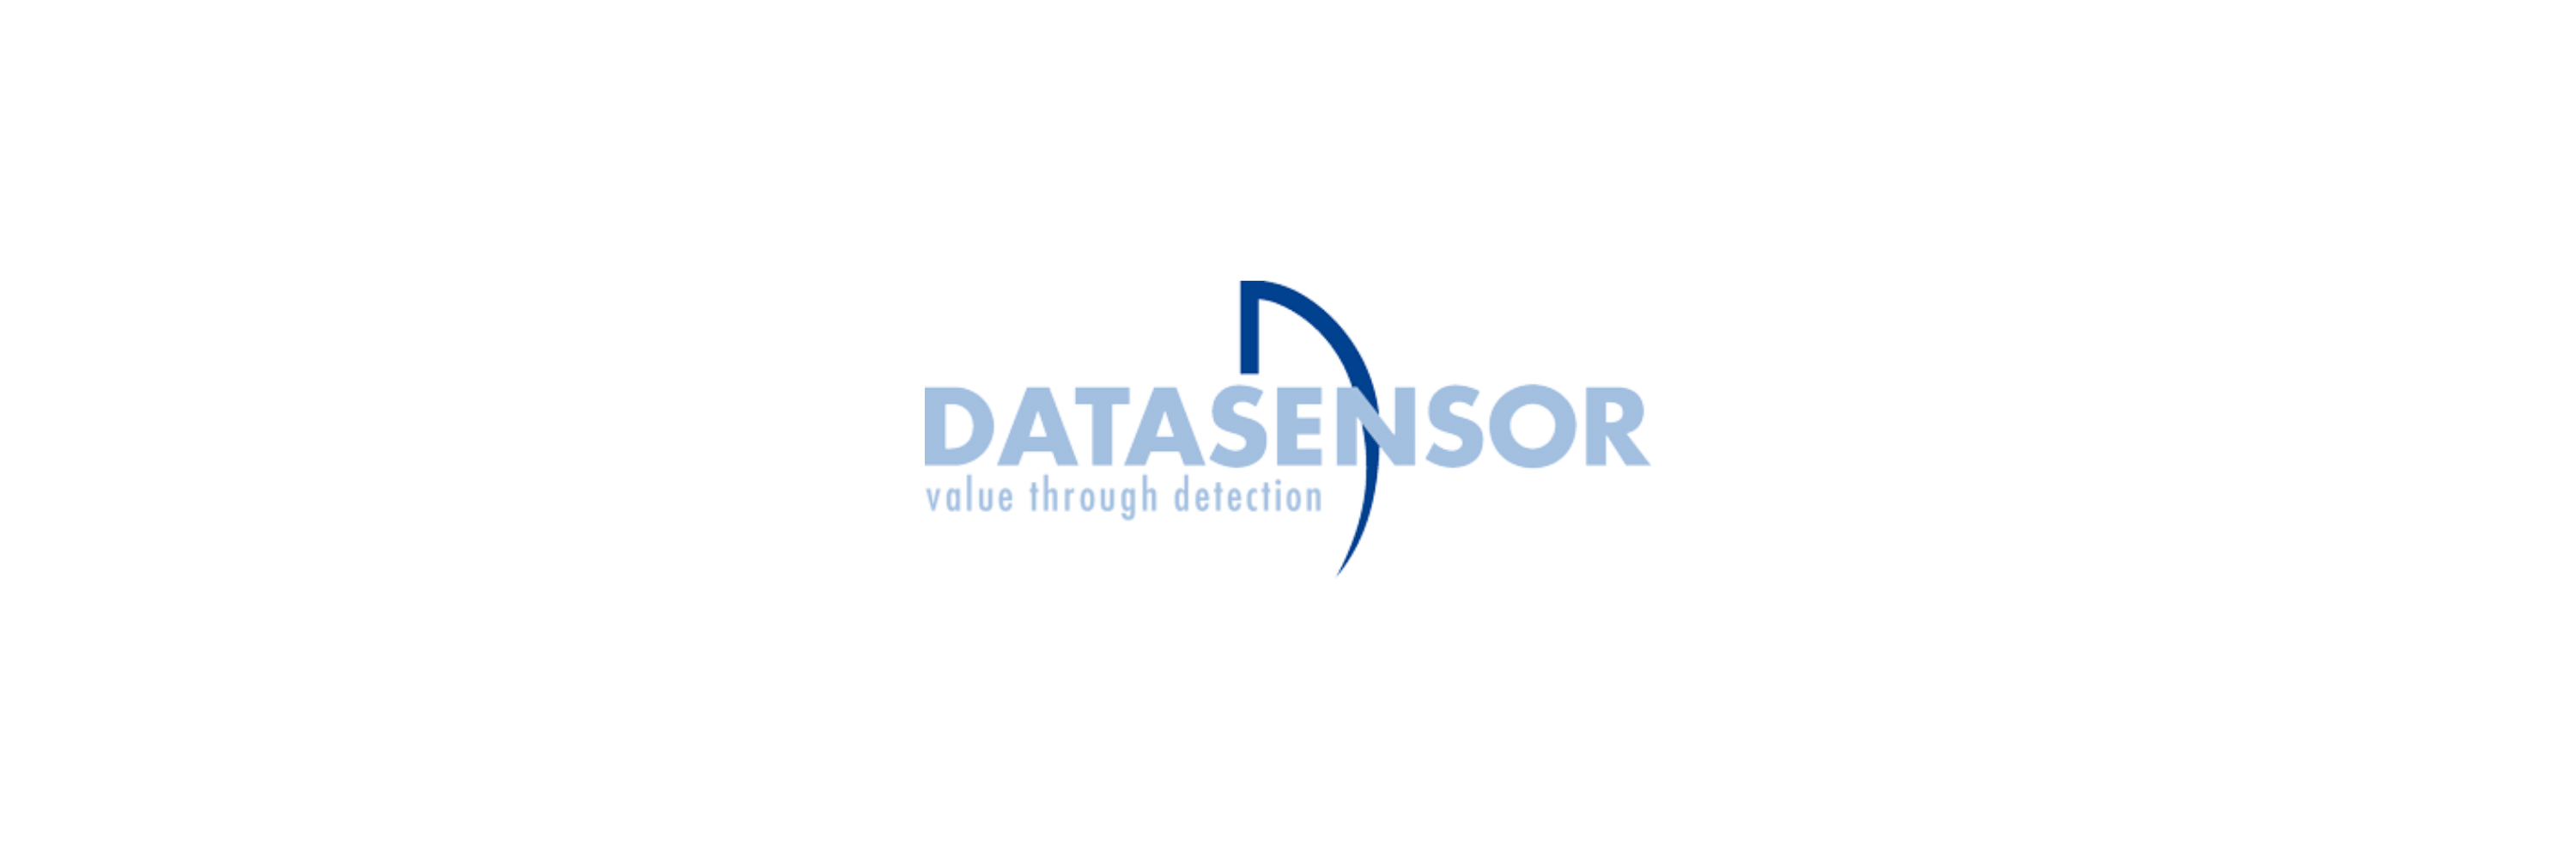 Datasensor - Klenk Maschinenhandel